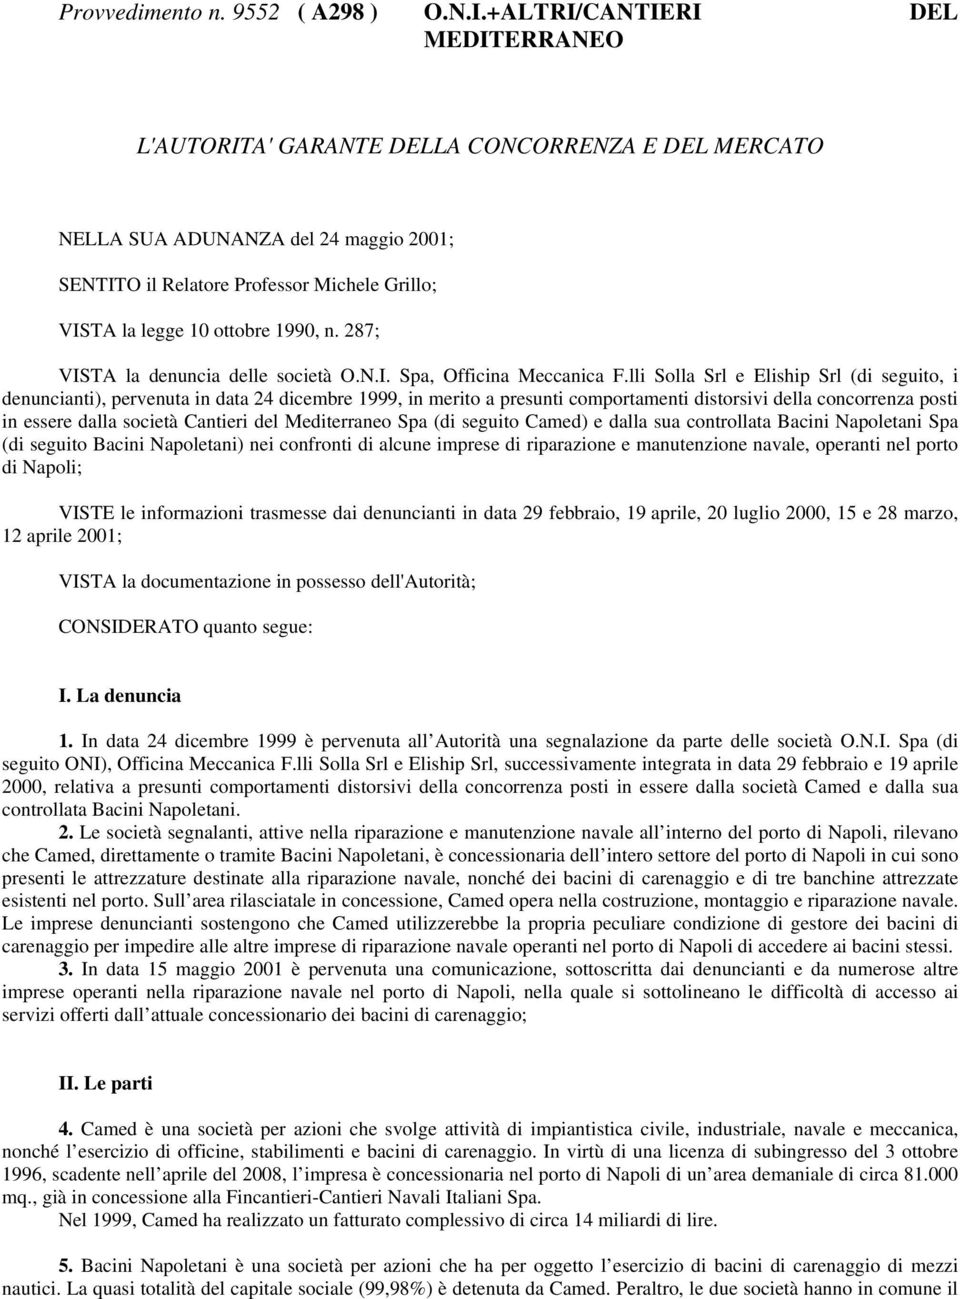 1990, n. 287; VISTA la denuncia delle società O.N.I. Spa, Officina Meccanica F.